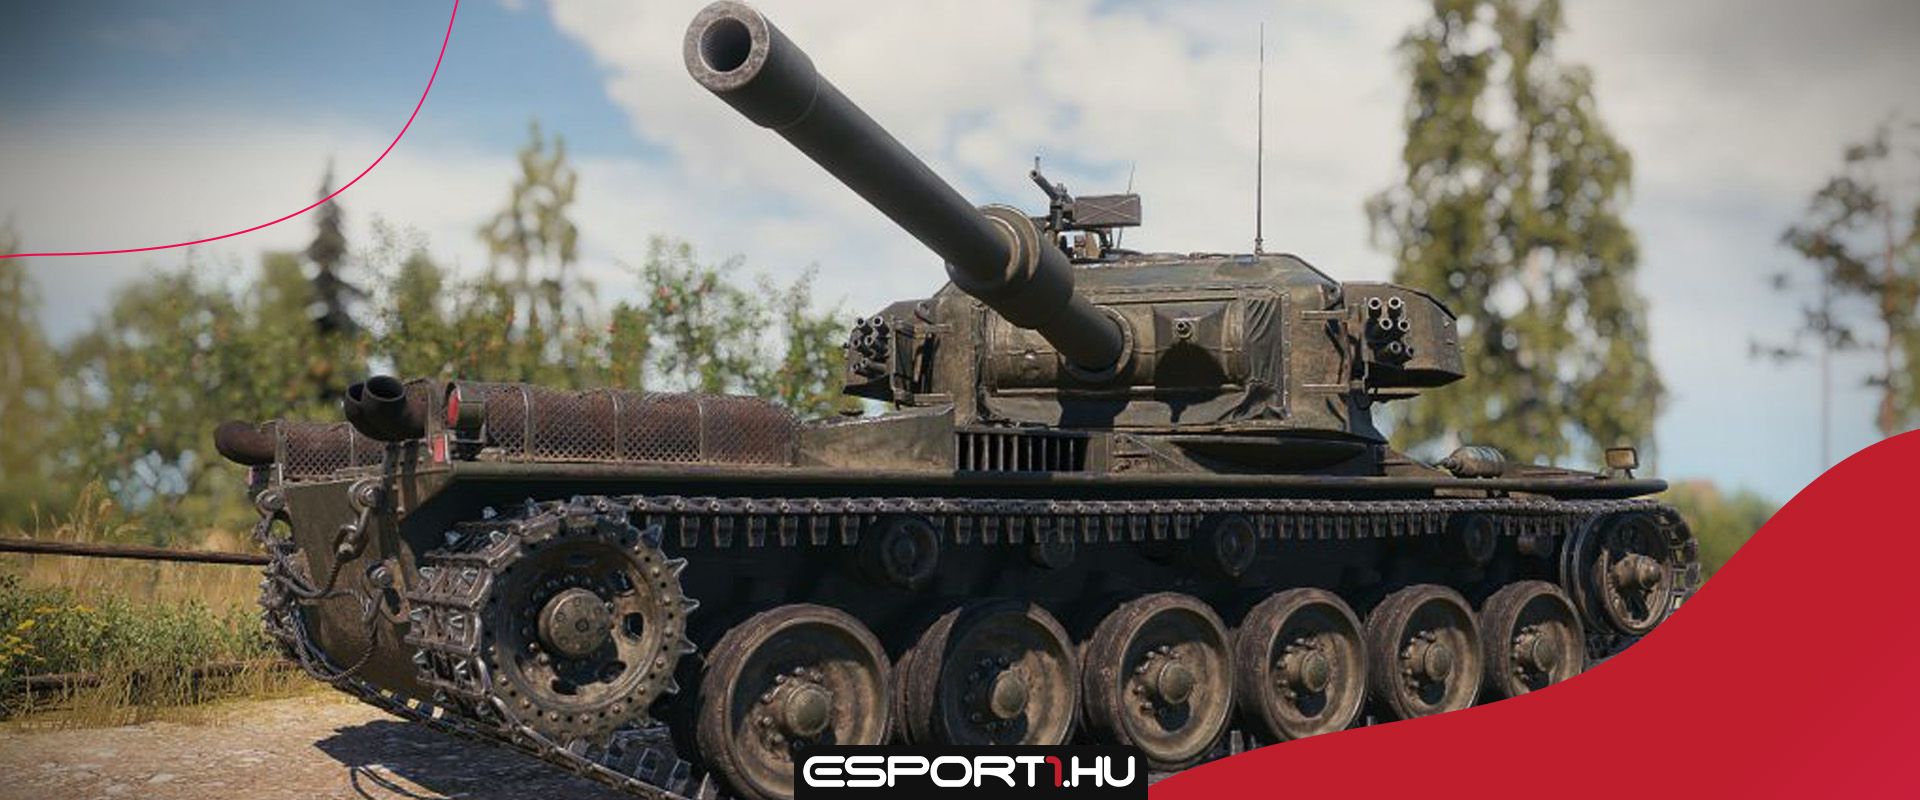 Új tier IX-es egyedi svéd nehéz tank - Bemutatjuk az Strv K harckocsit!